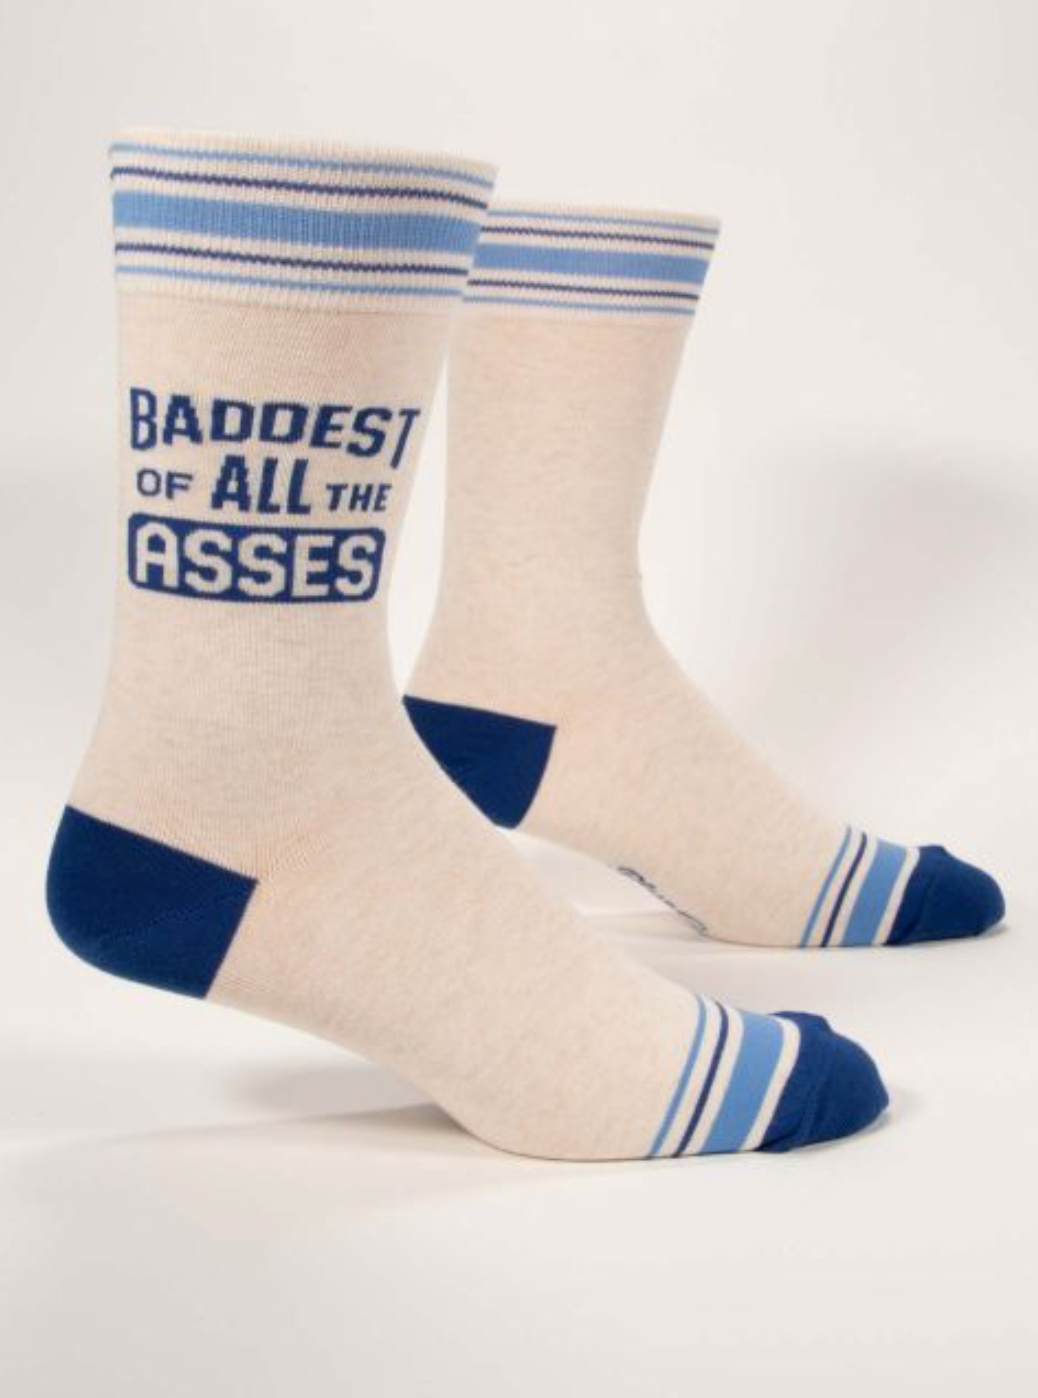 Baddest Of Asses Men's Socks